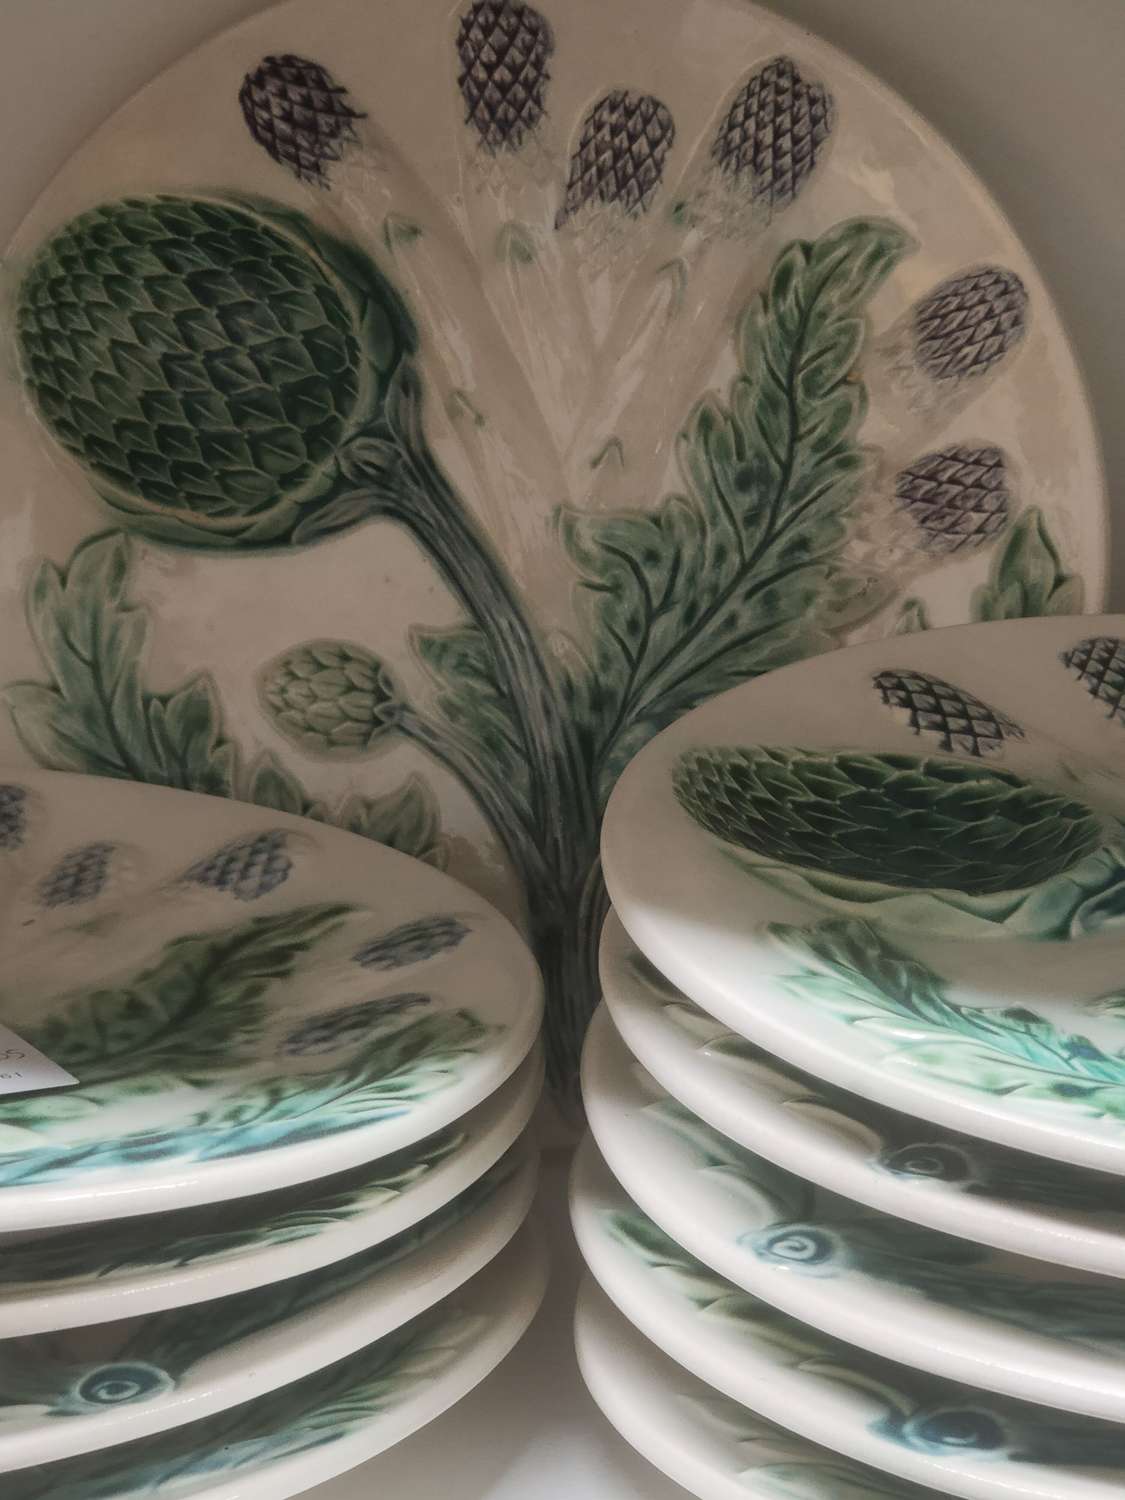 Antique Majolica asparagus plates